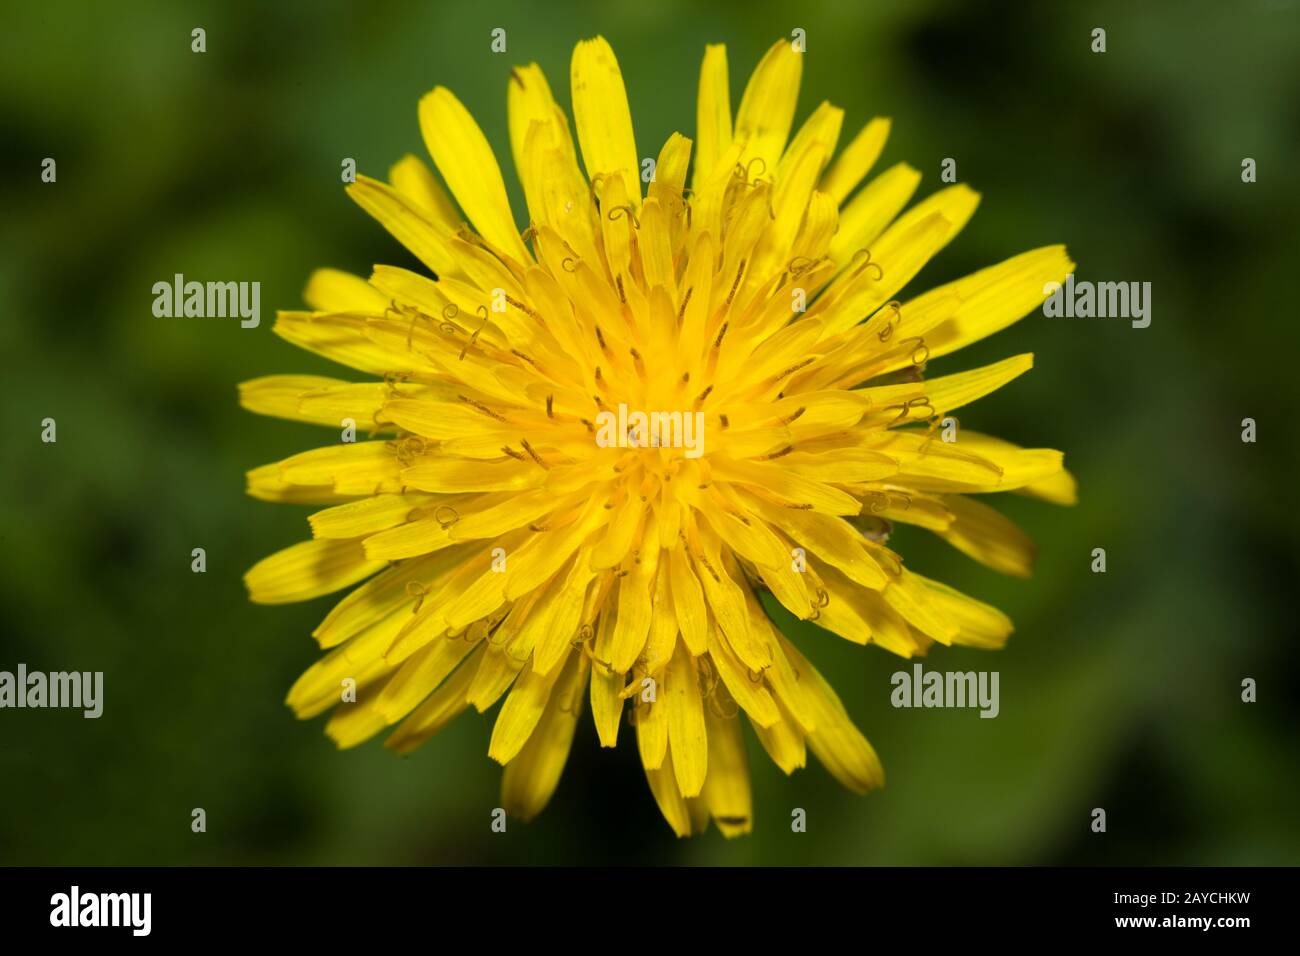 Gros plan sur la fleur de Dandelion, prise de haut en bas, fleur jaune intense Banque D'Images